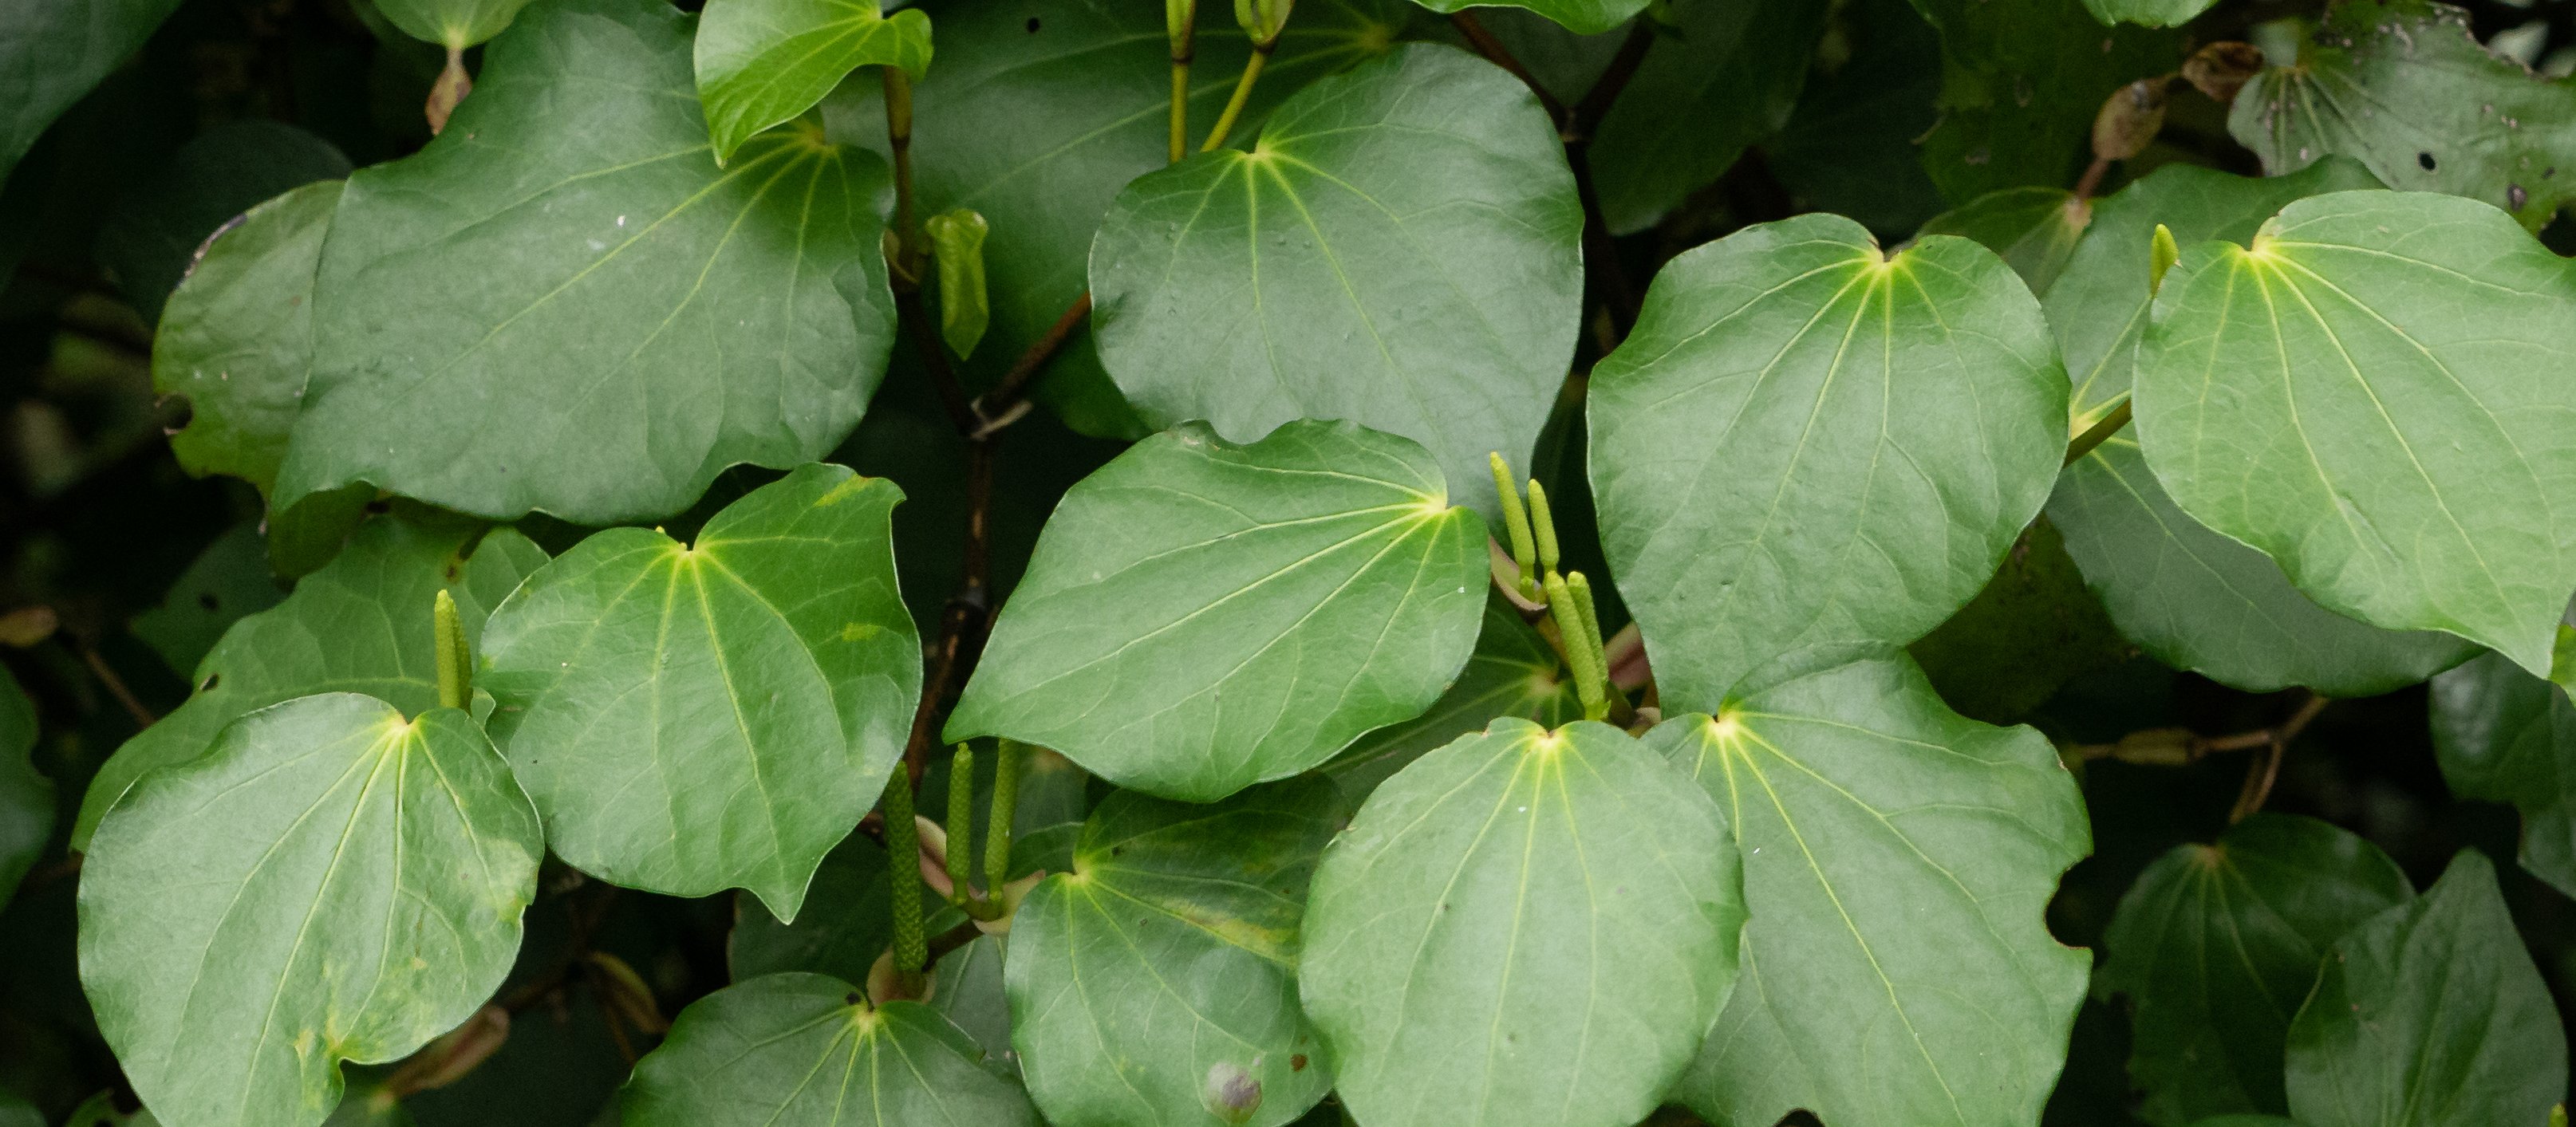 kawakawa: a promising new zealand native plant | pharmacy today